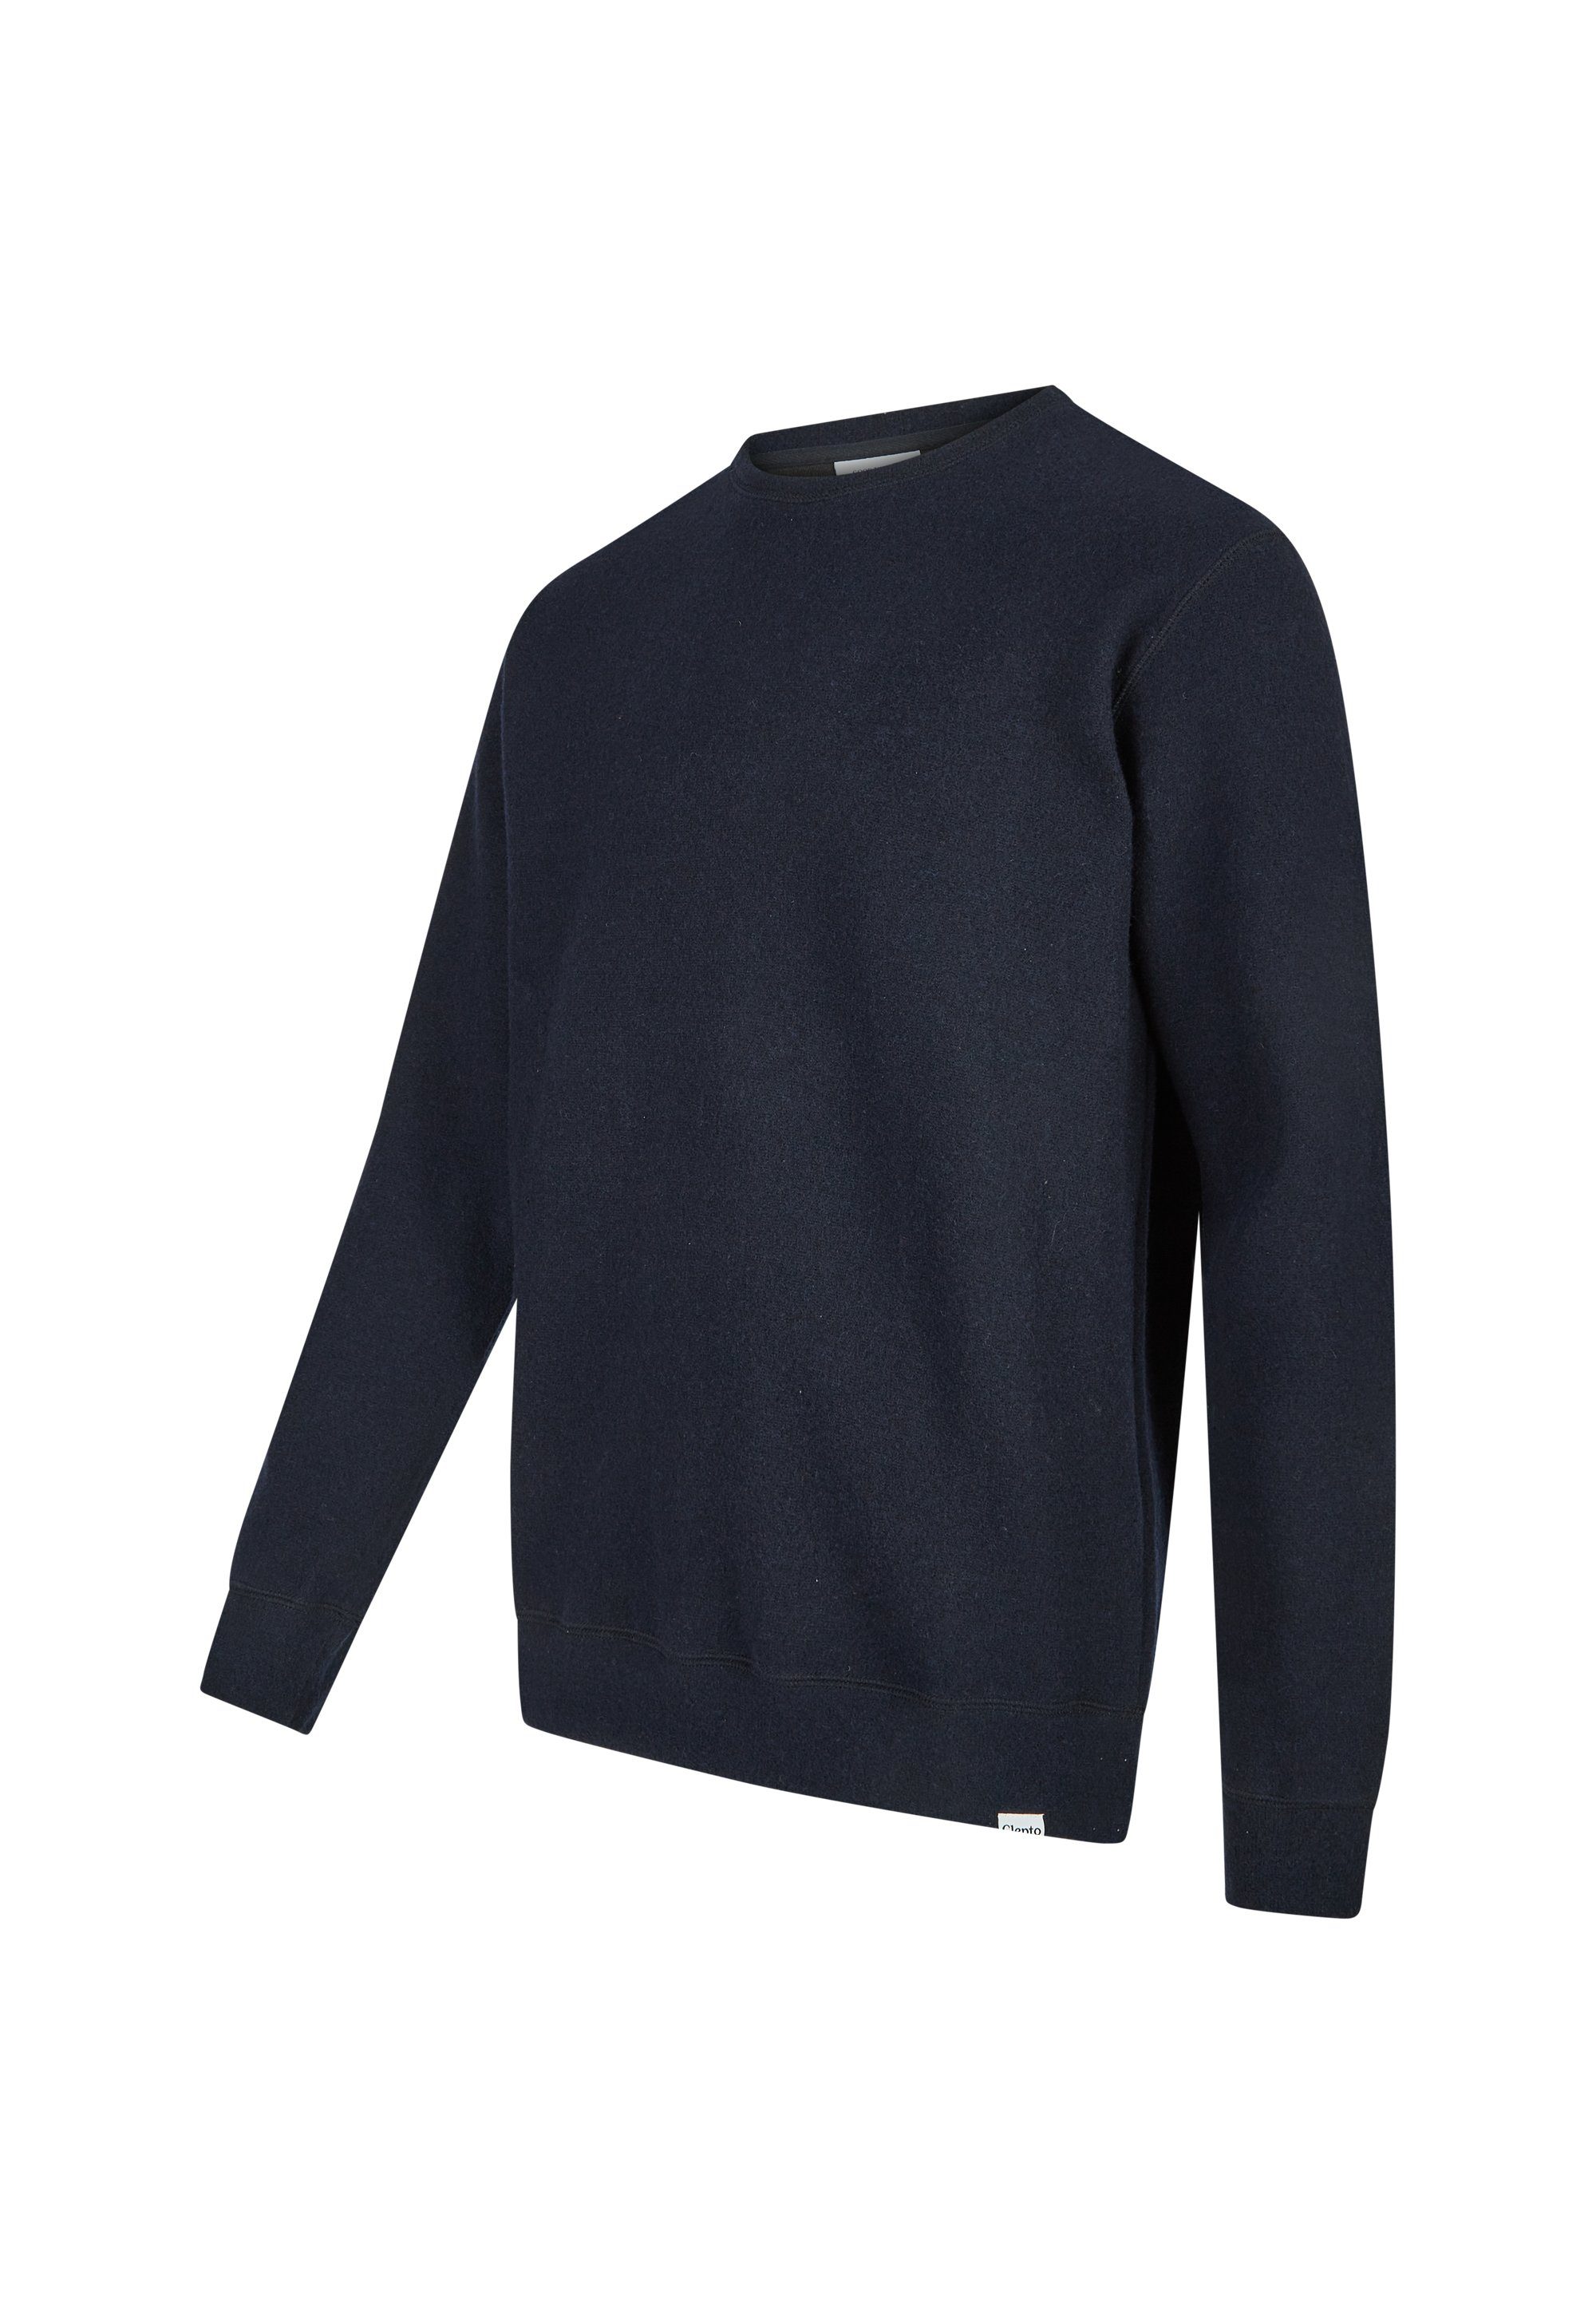 Wolle Sweatshirt aus Cleptomanicx gebondeter blau Noitch